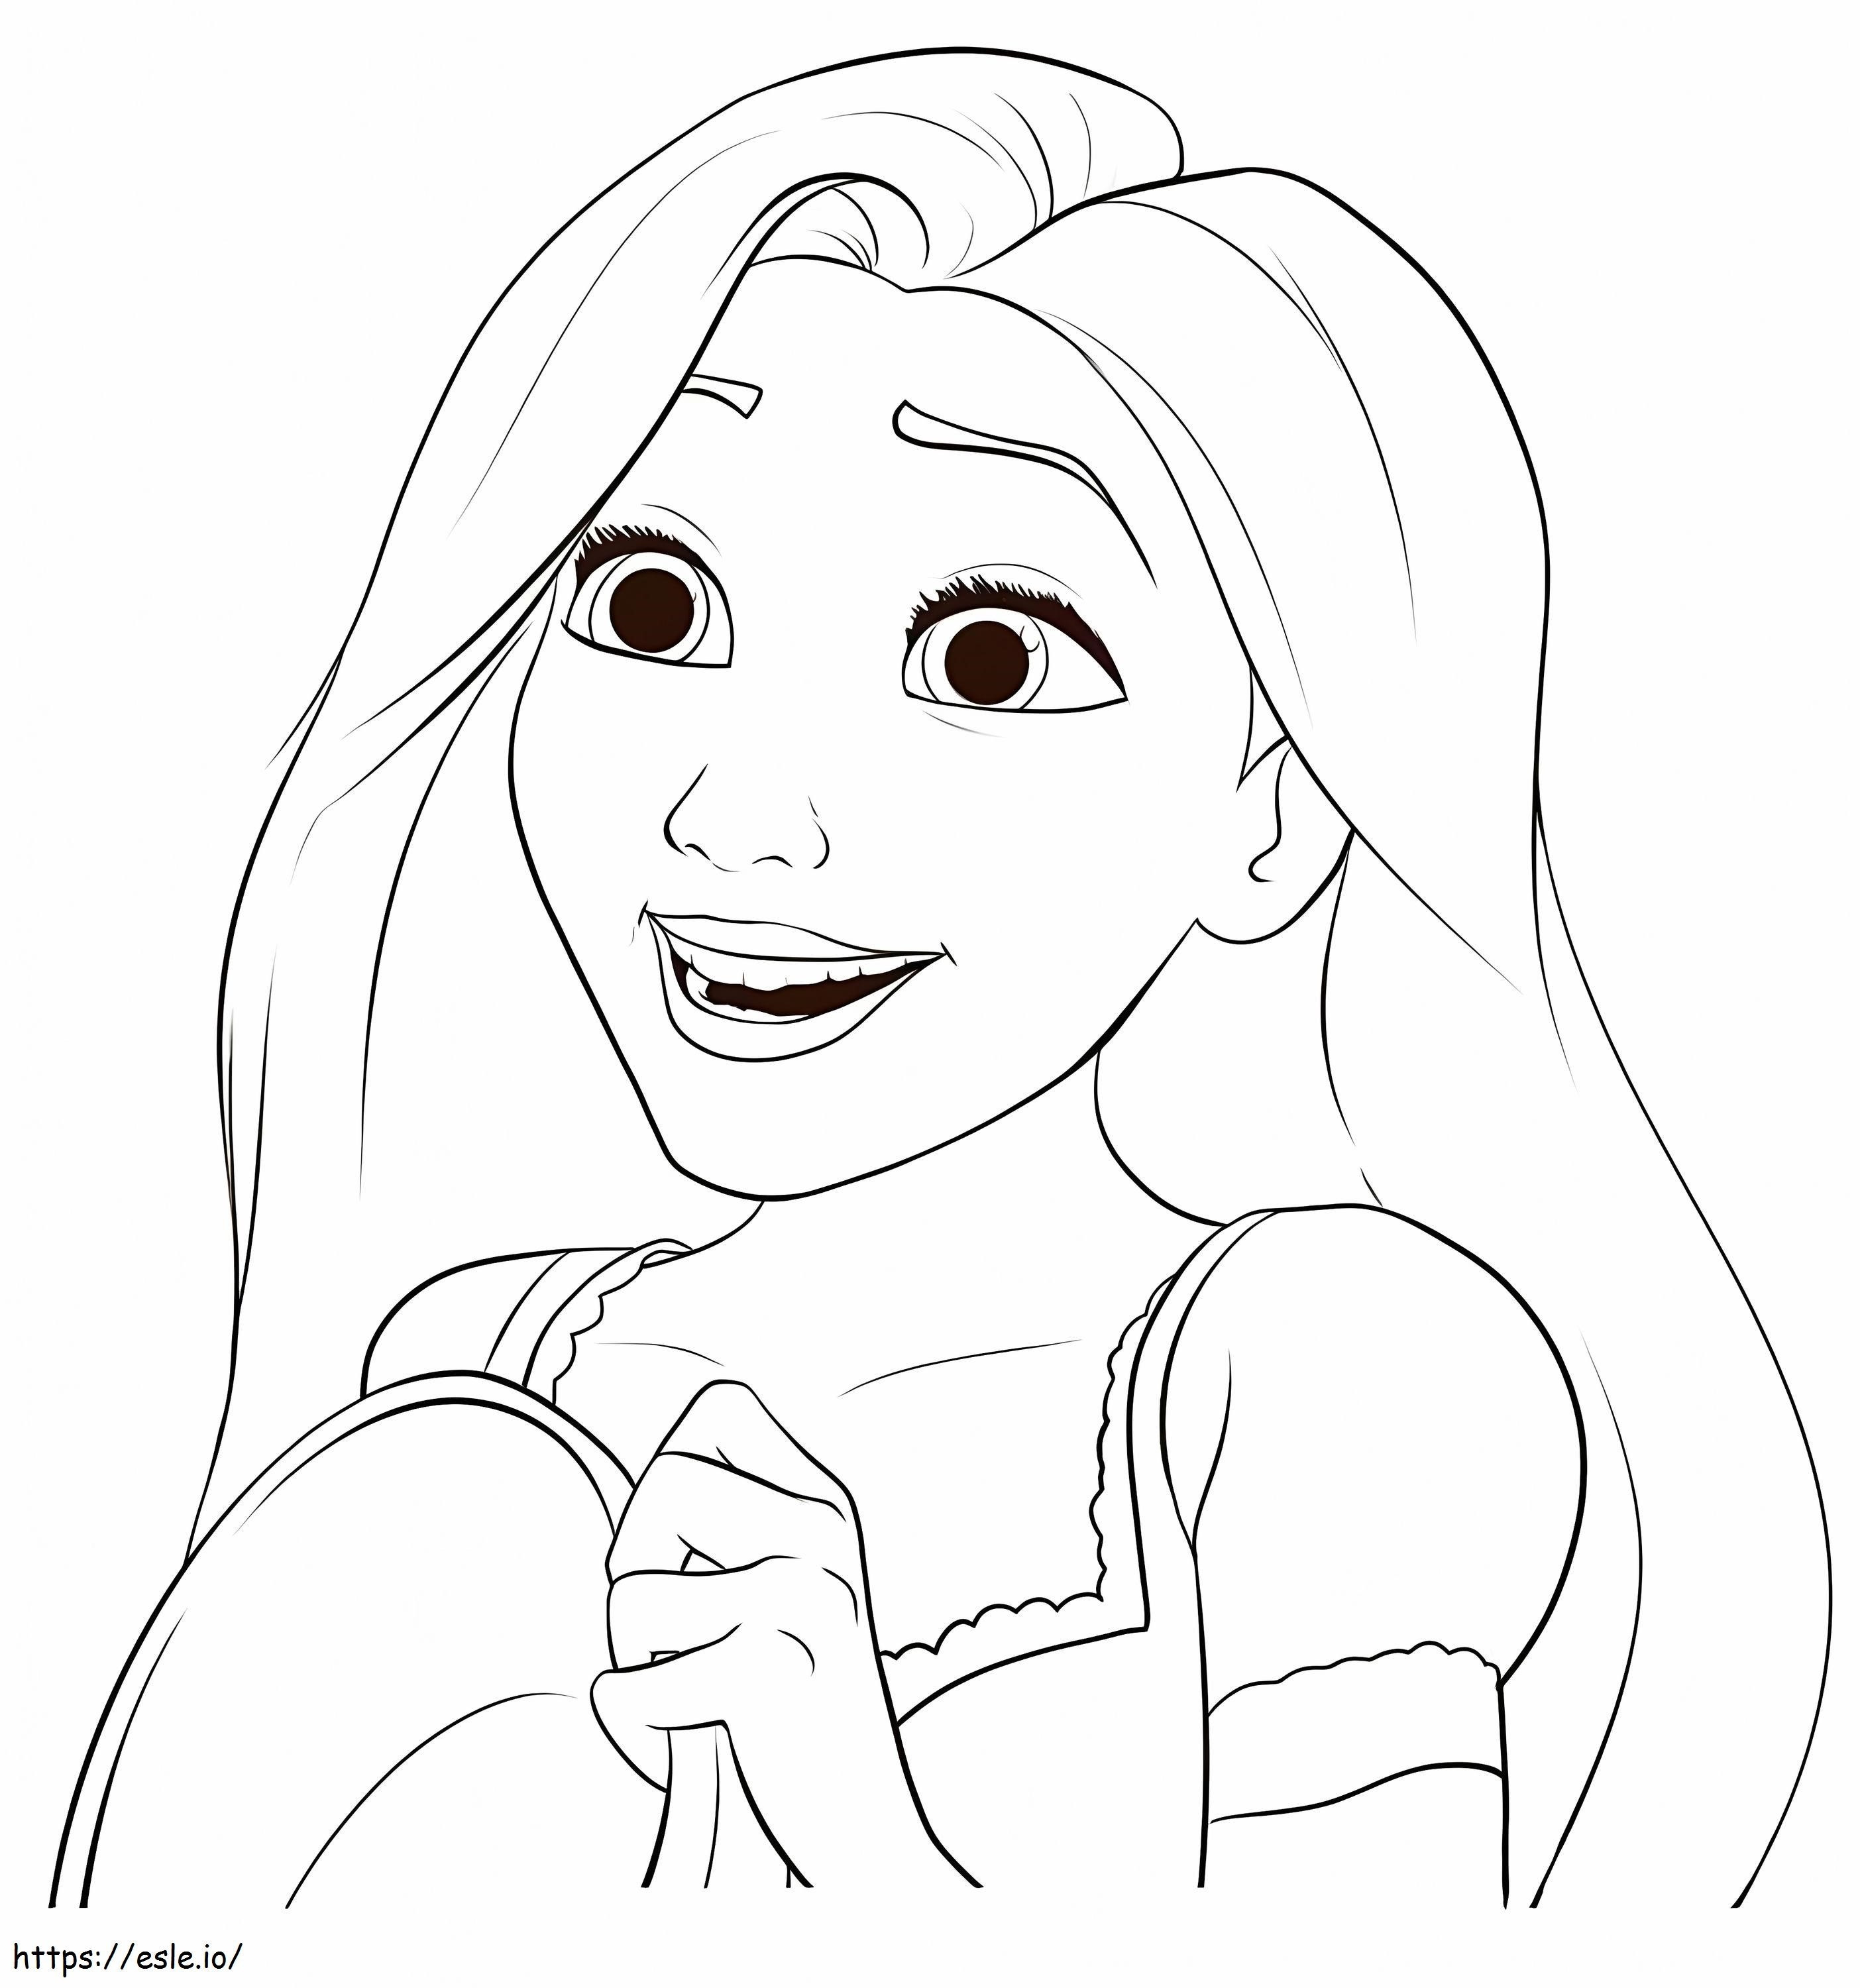 Il volto di Rapunzel divertente da colorare